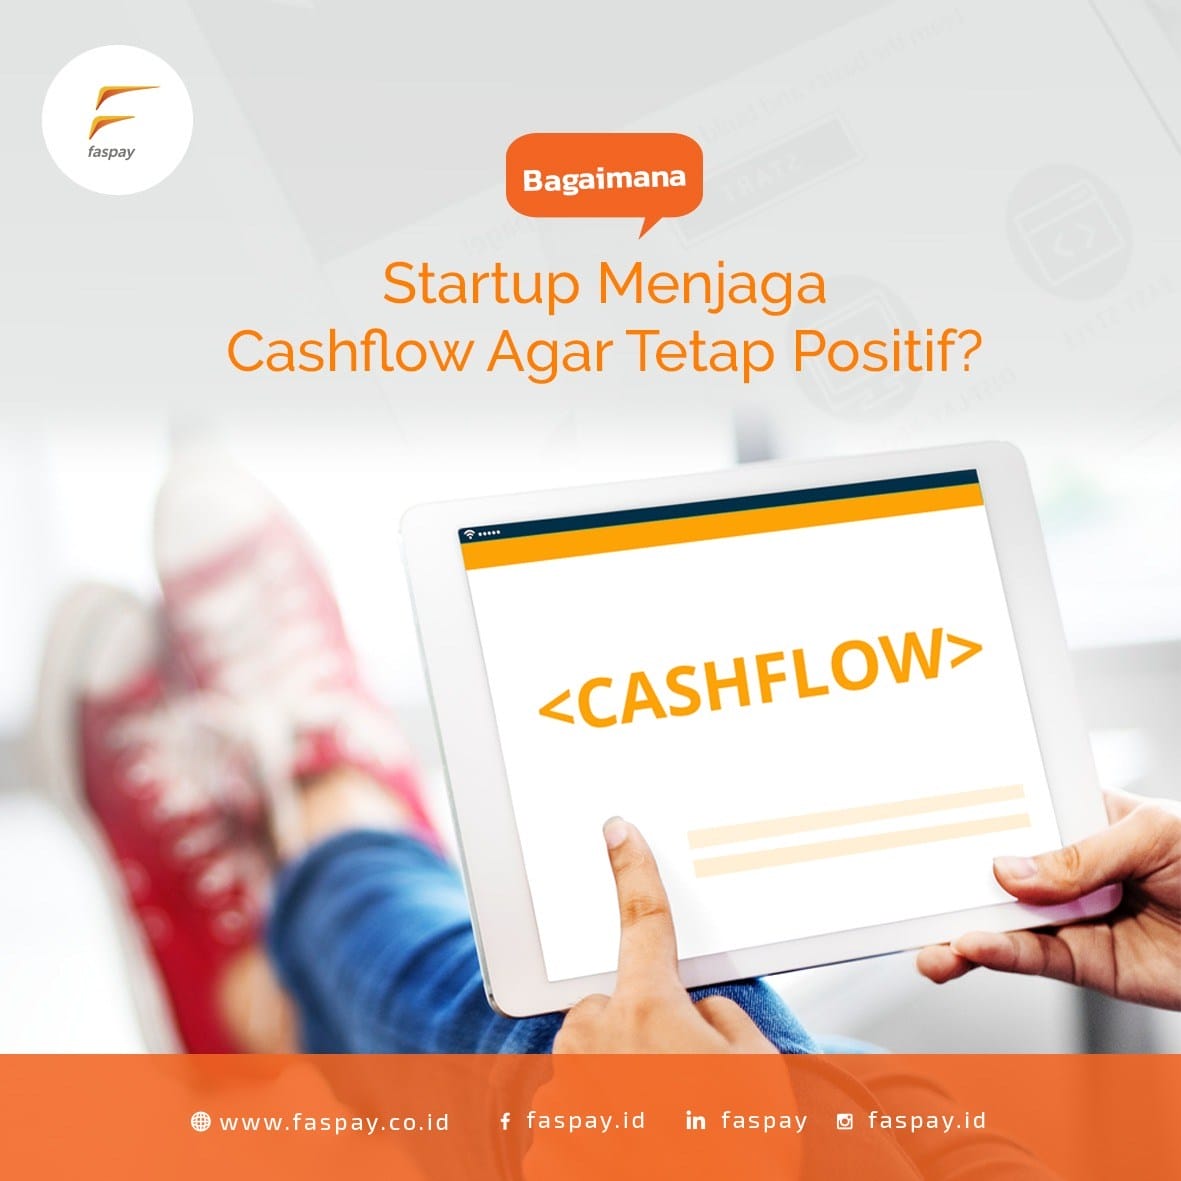 Bagaimana Startup Menjaga Agar Cashflow Tetap Positif